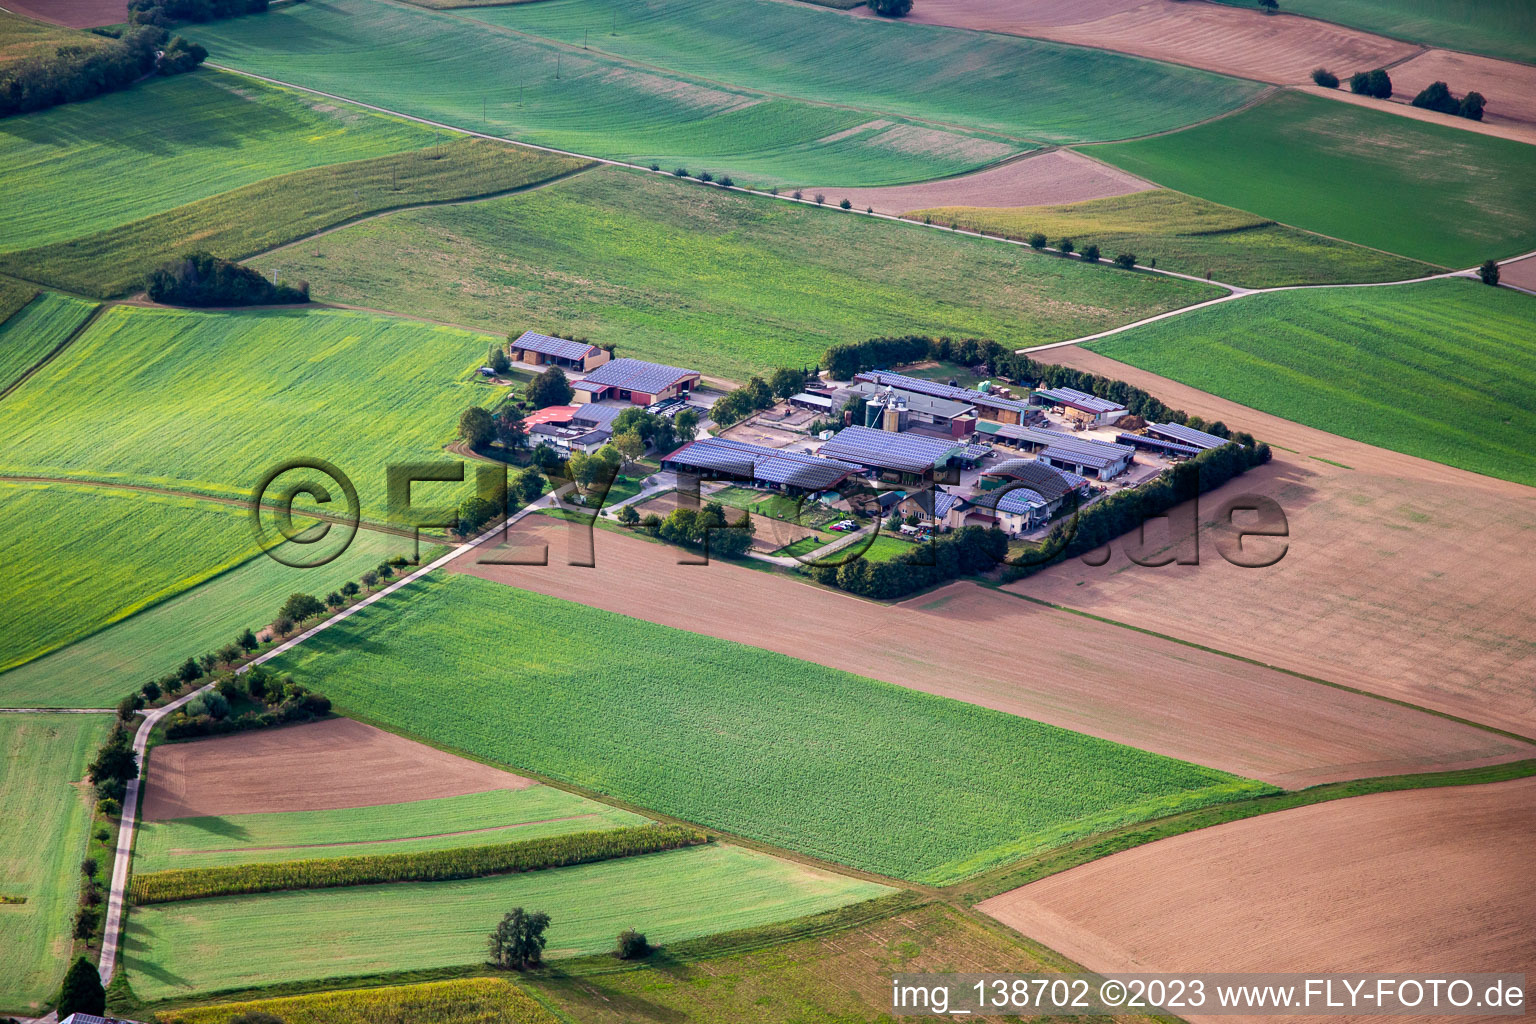 Vue aérienne de Aussiedlerhof à Zaisenhausen dans le département Bade-Wurtemberg, Allemagne